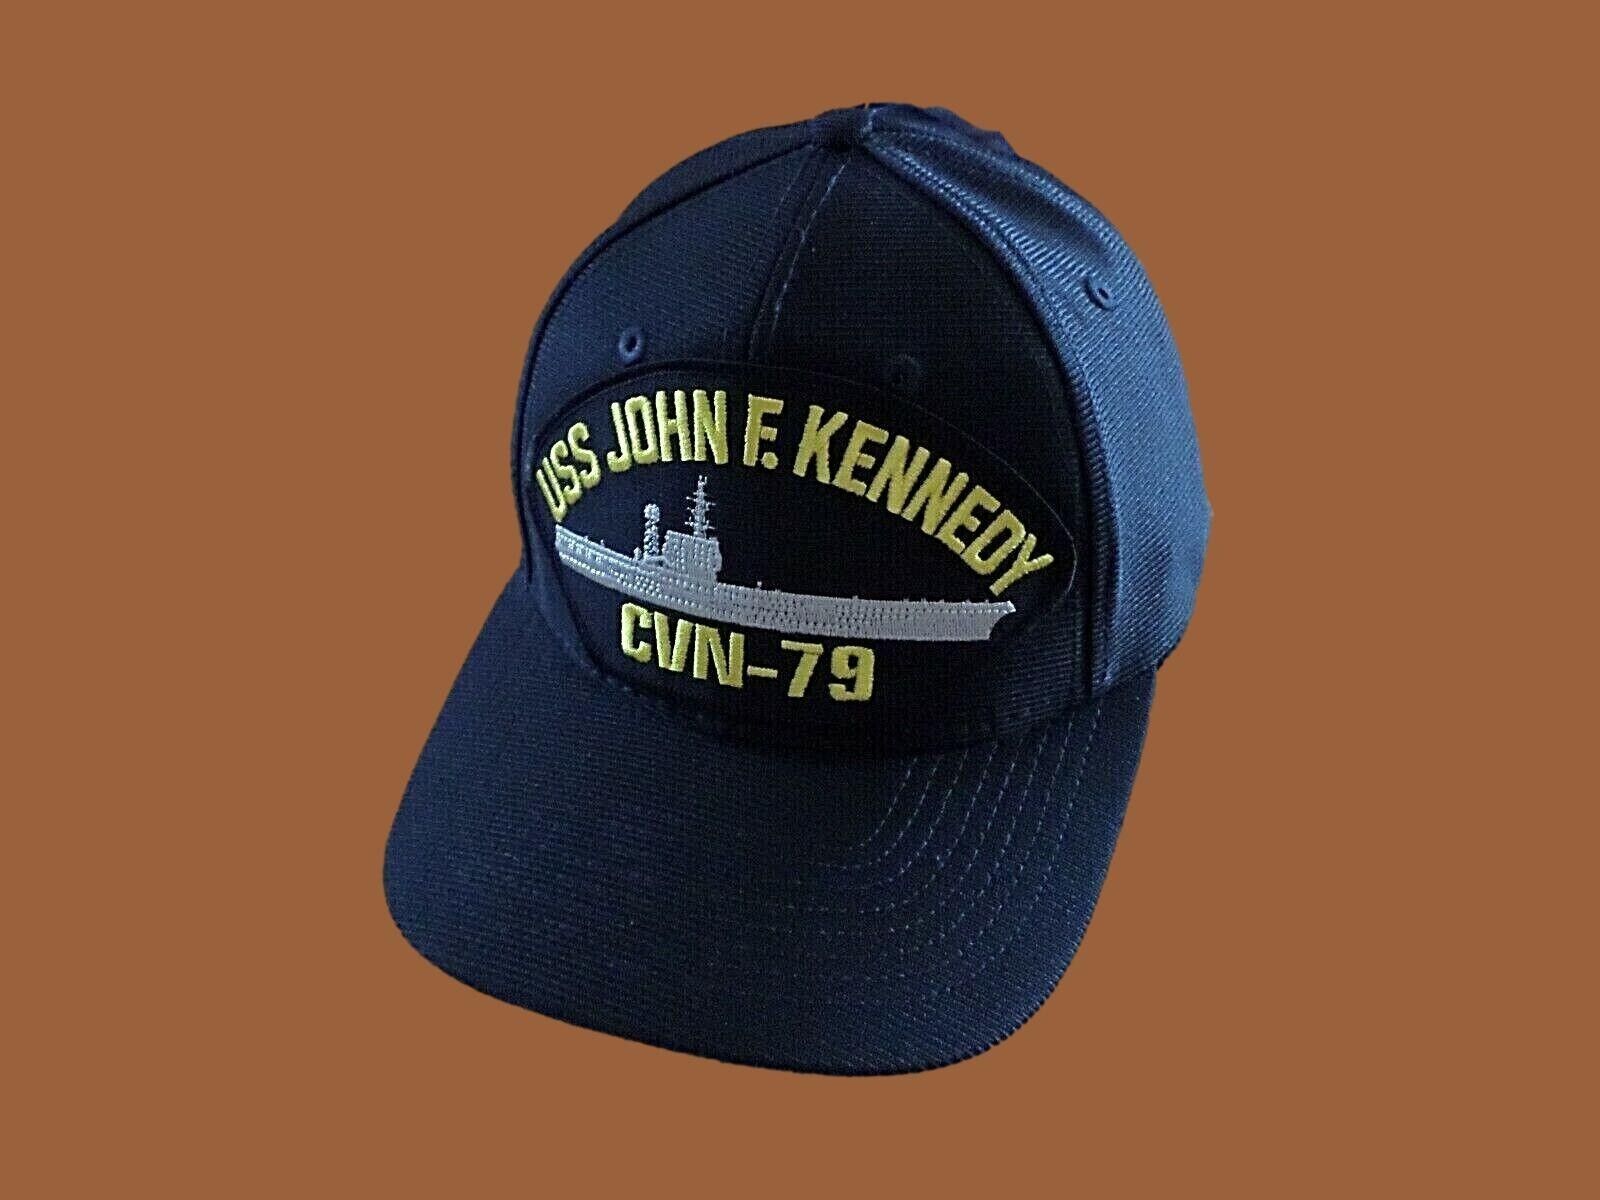 USS JOHN F KENNEDY CVN- 79 NAVY SHIP HAT OFFICIAL U.S MILITARY BALL CAP USA MADE